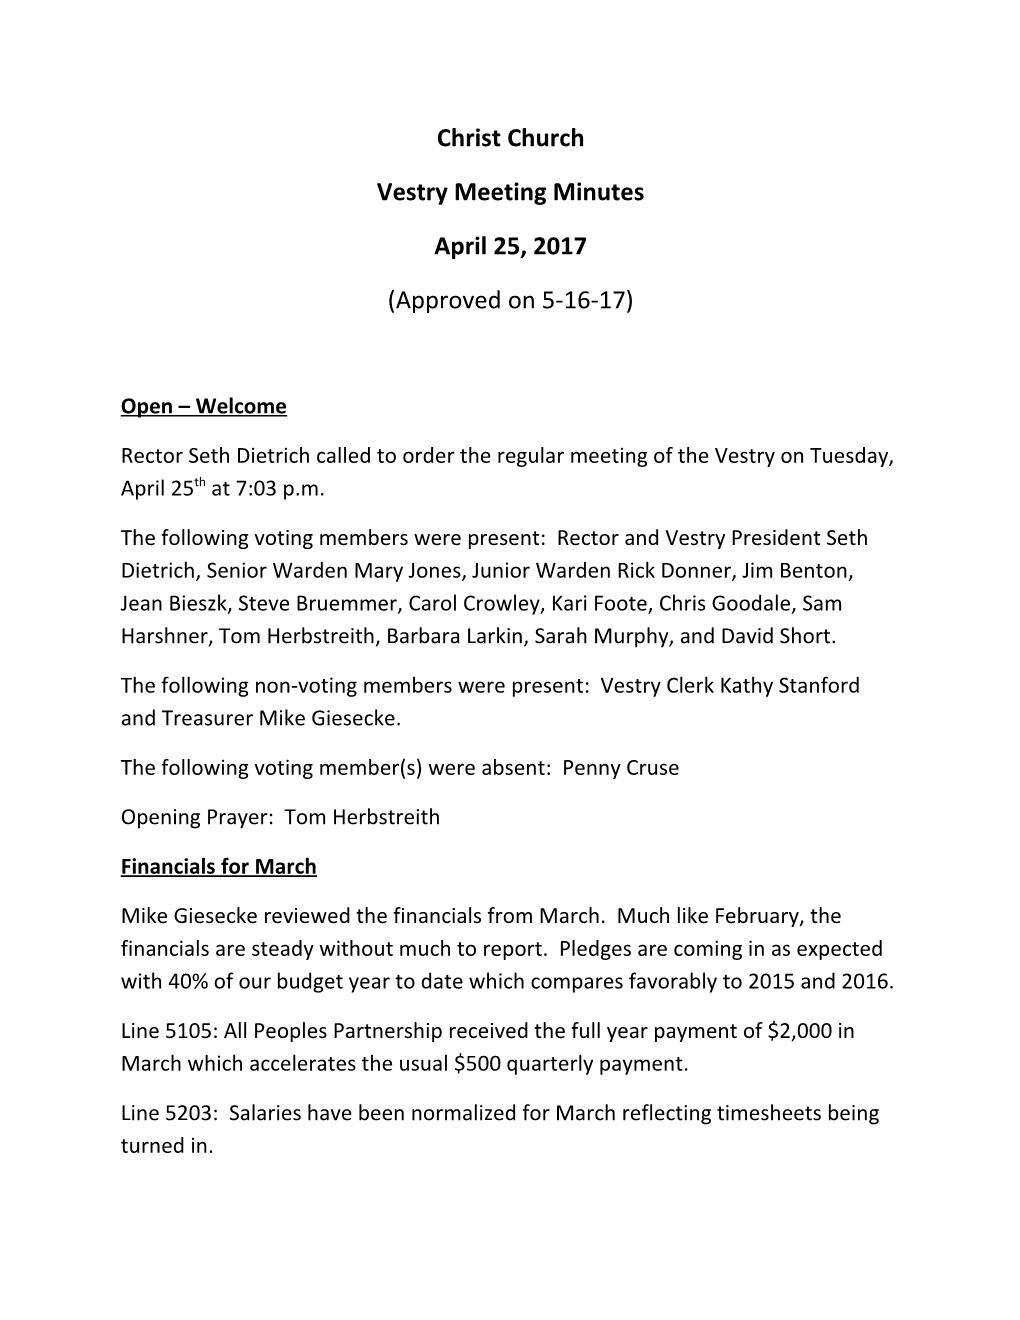 Vestry Meeting Minutes